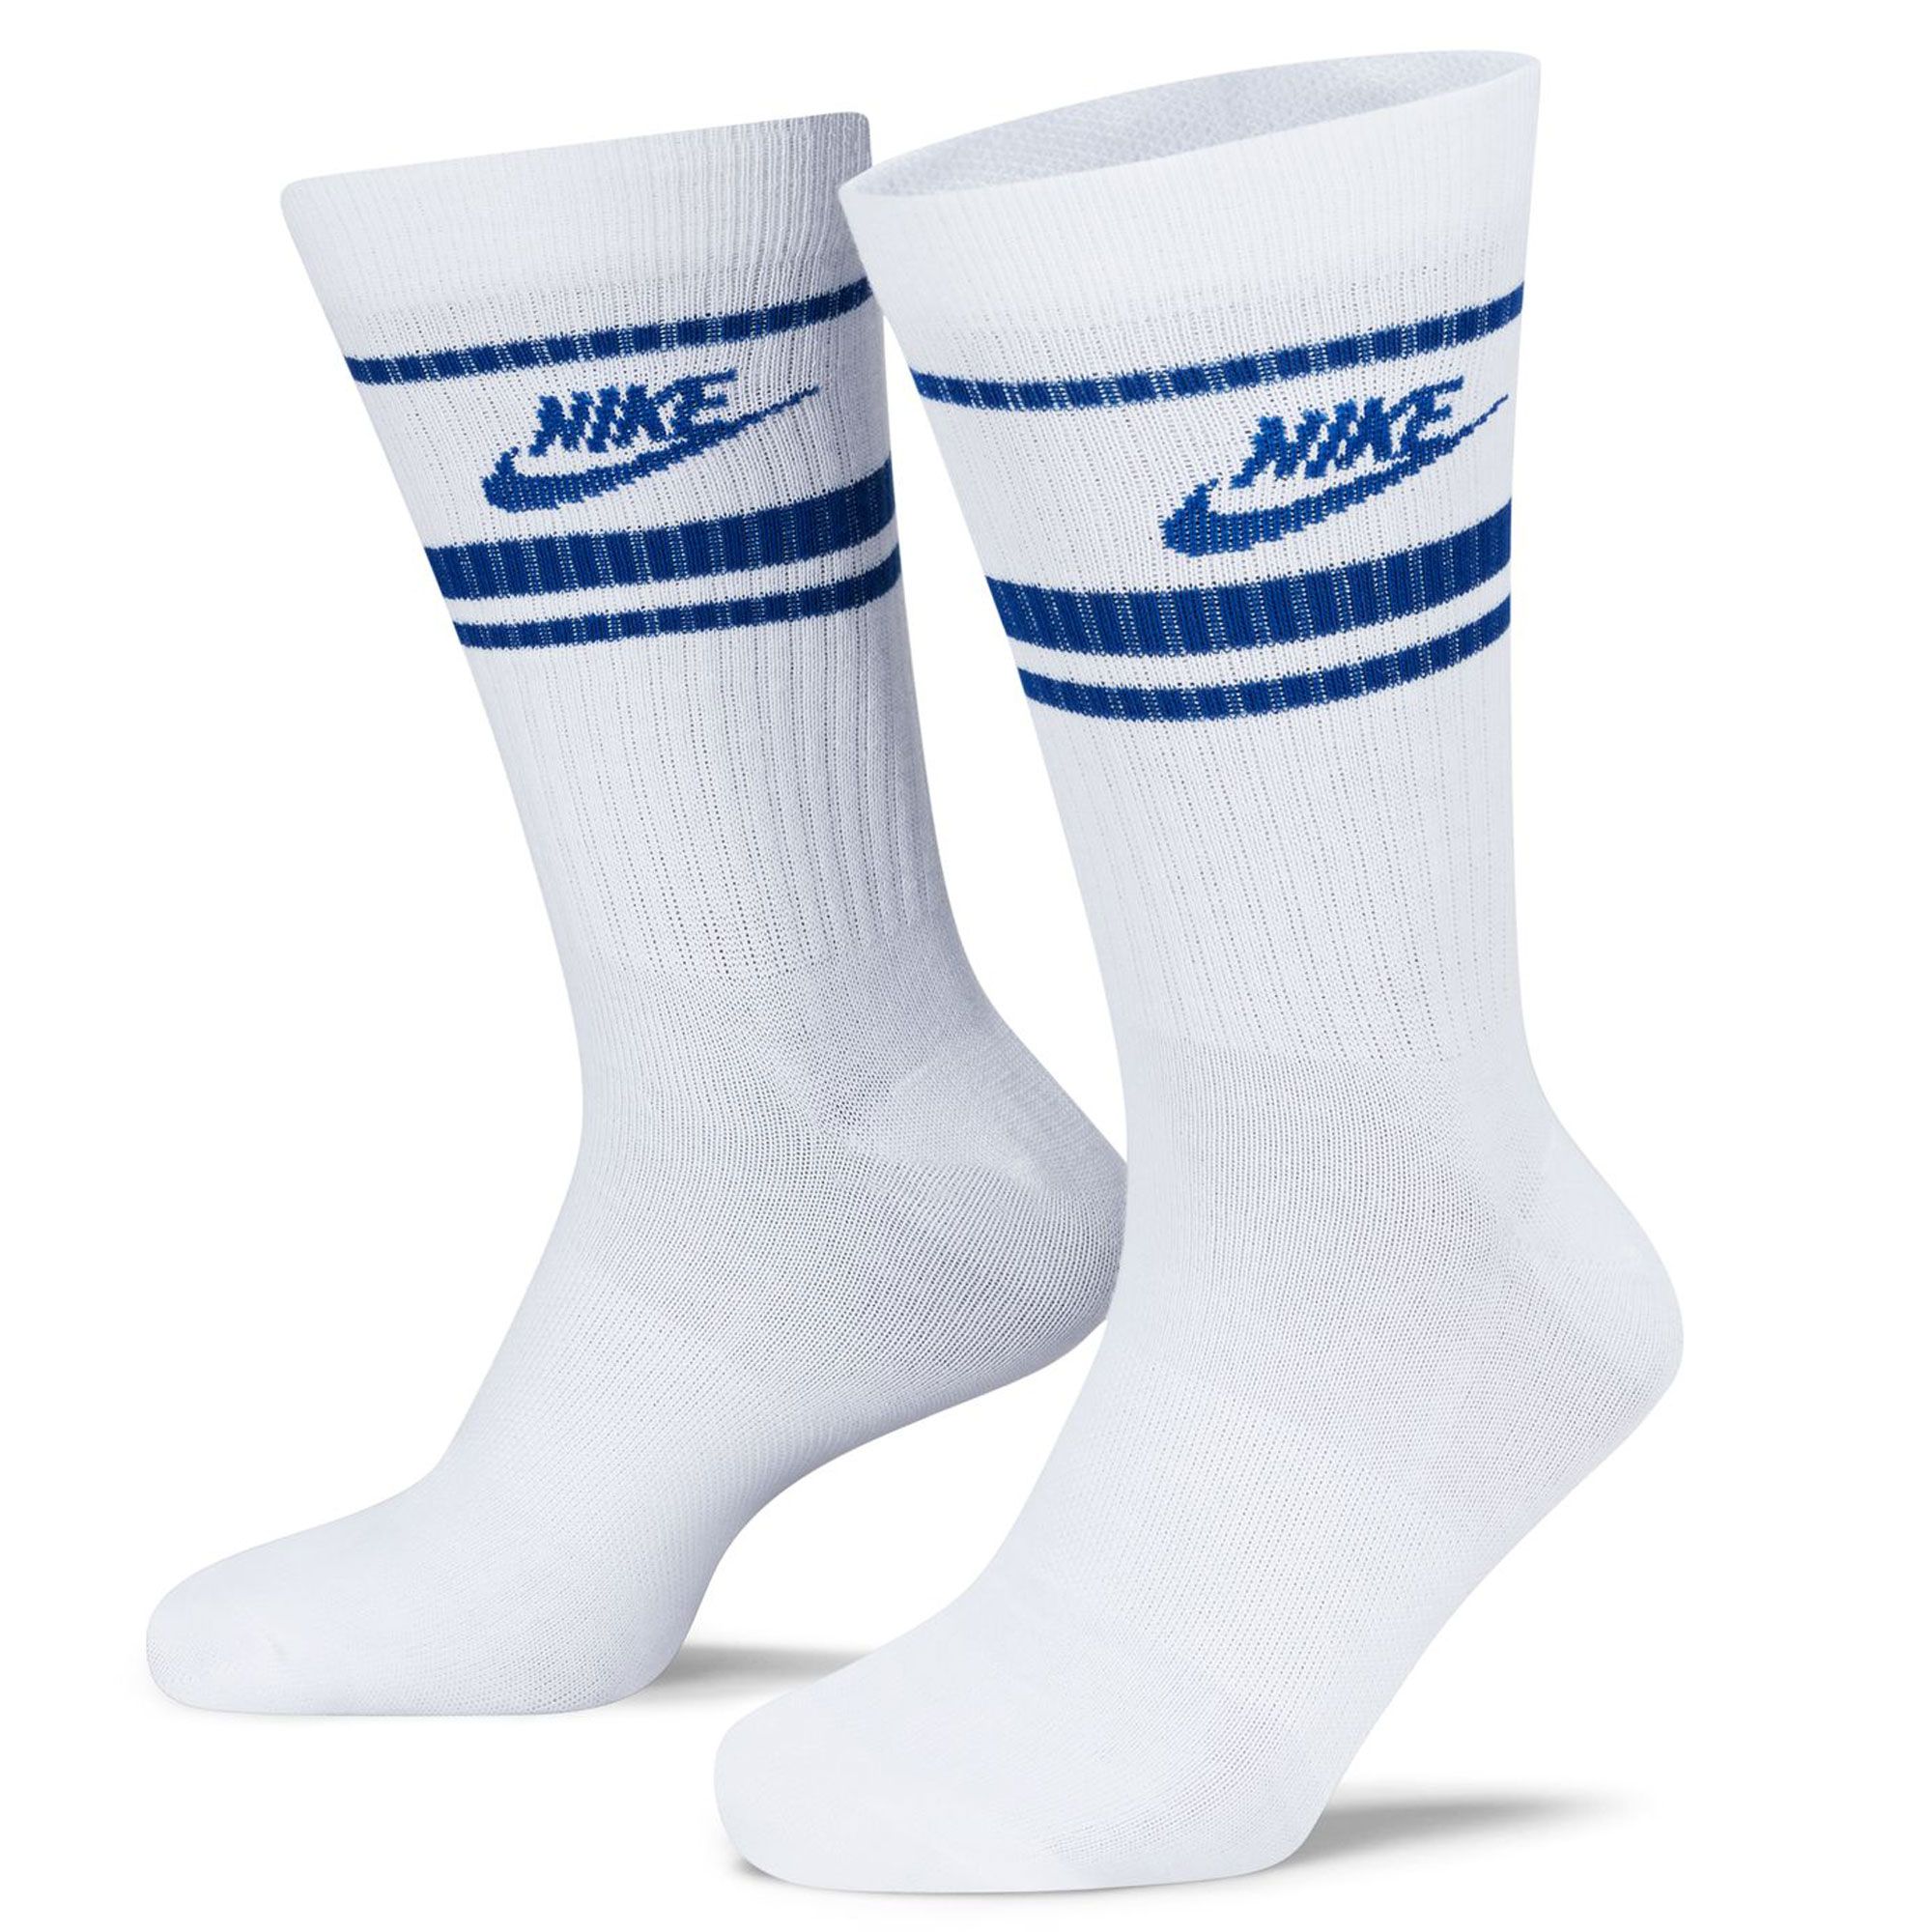 Nike Men's Sportswear Everyday Essential Crew Socks – 3 Pack